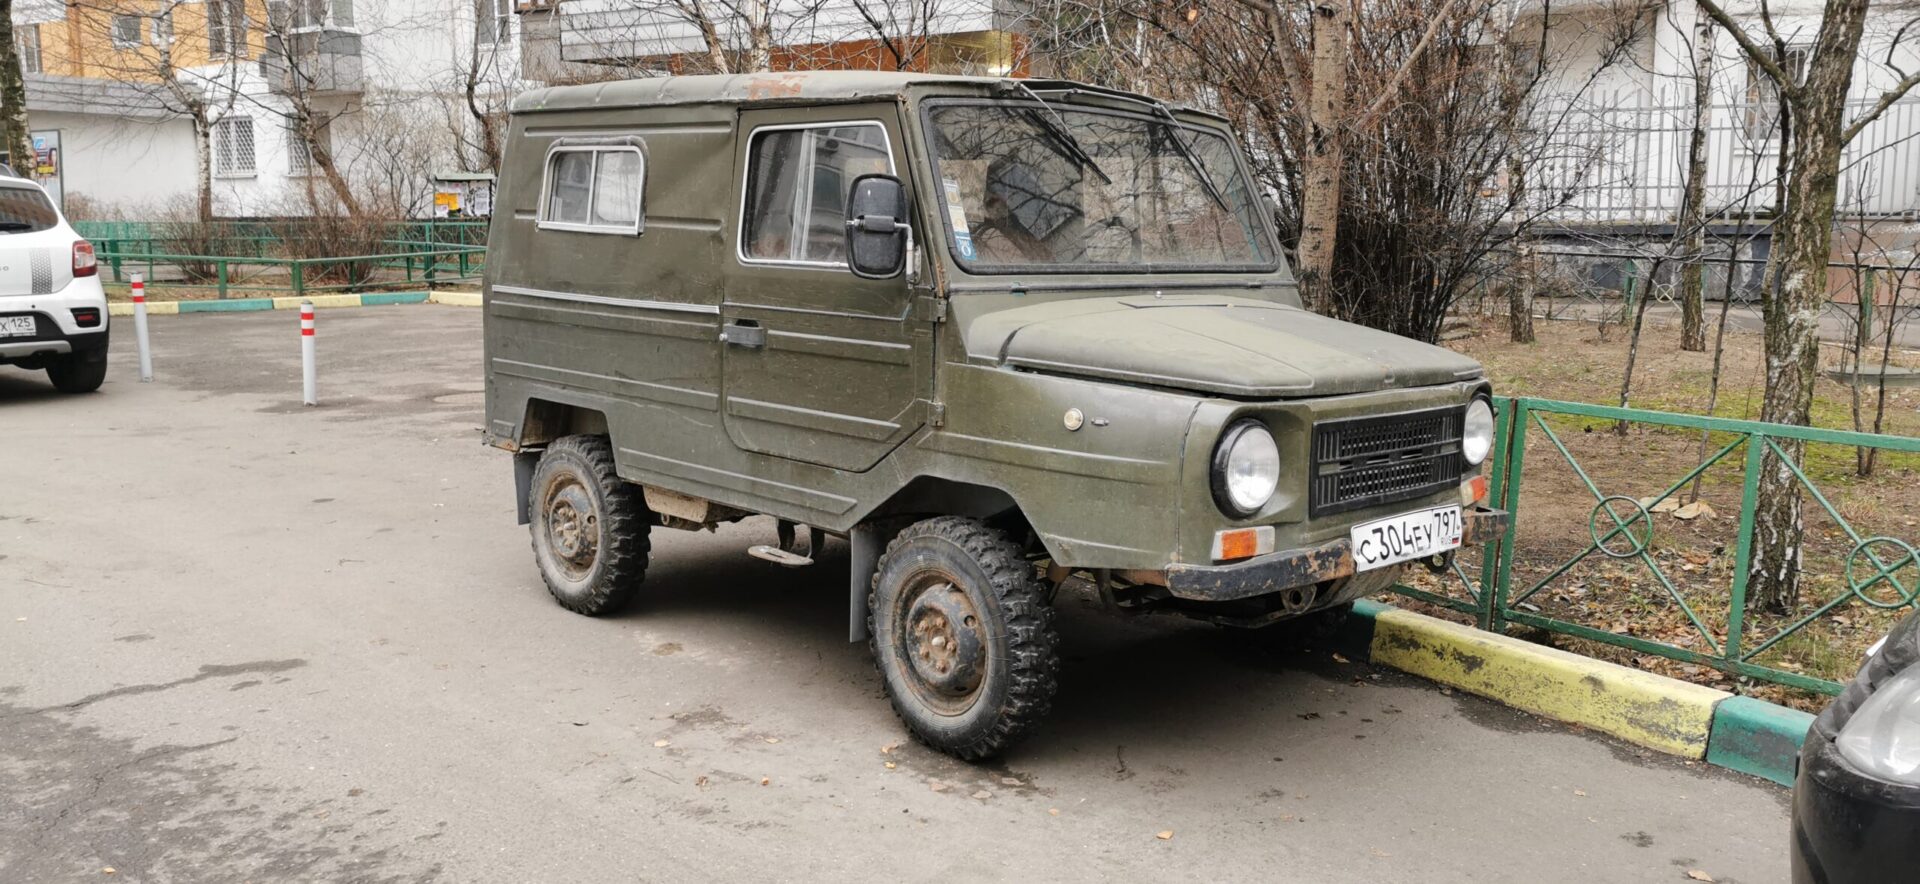 Каждый третий россиянин в юности мечтал купить автомобиль производства СССР